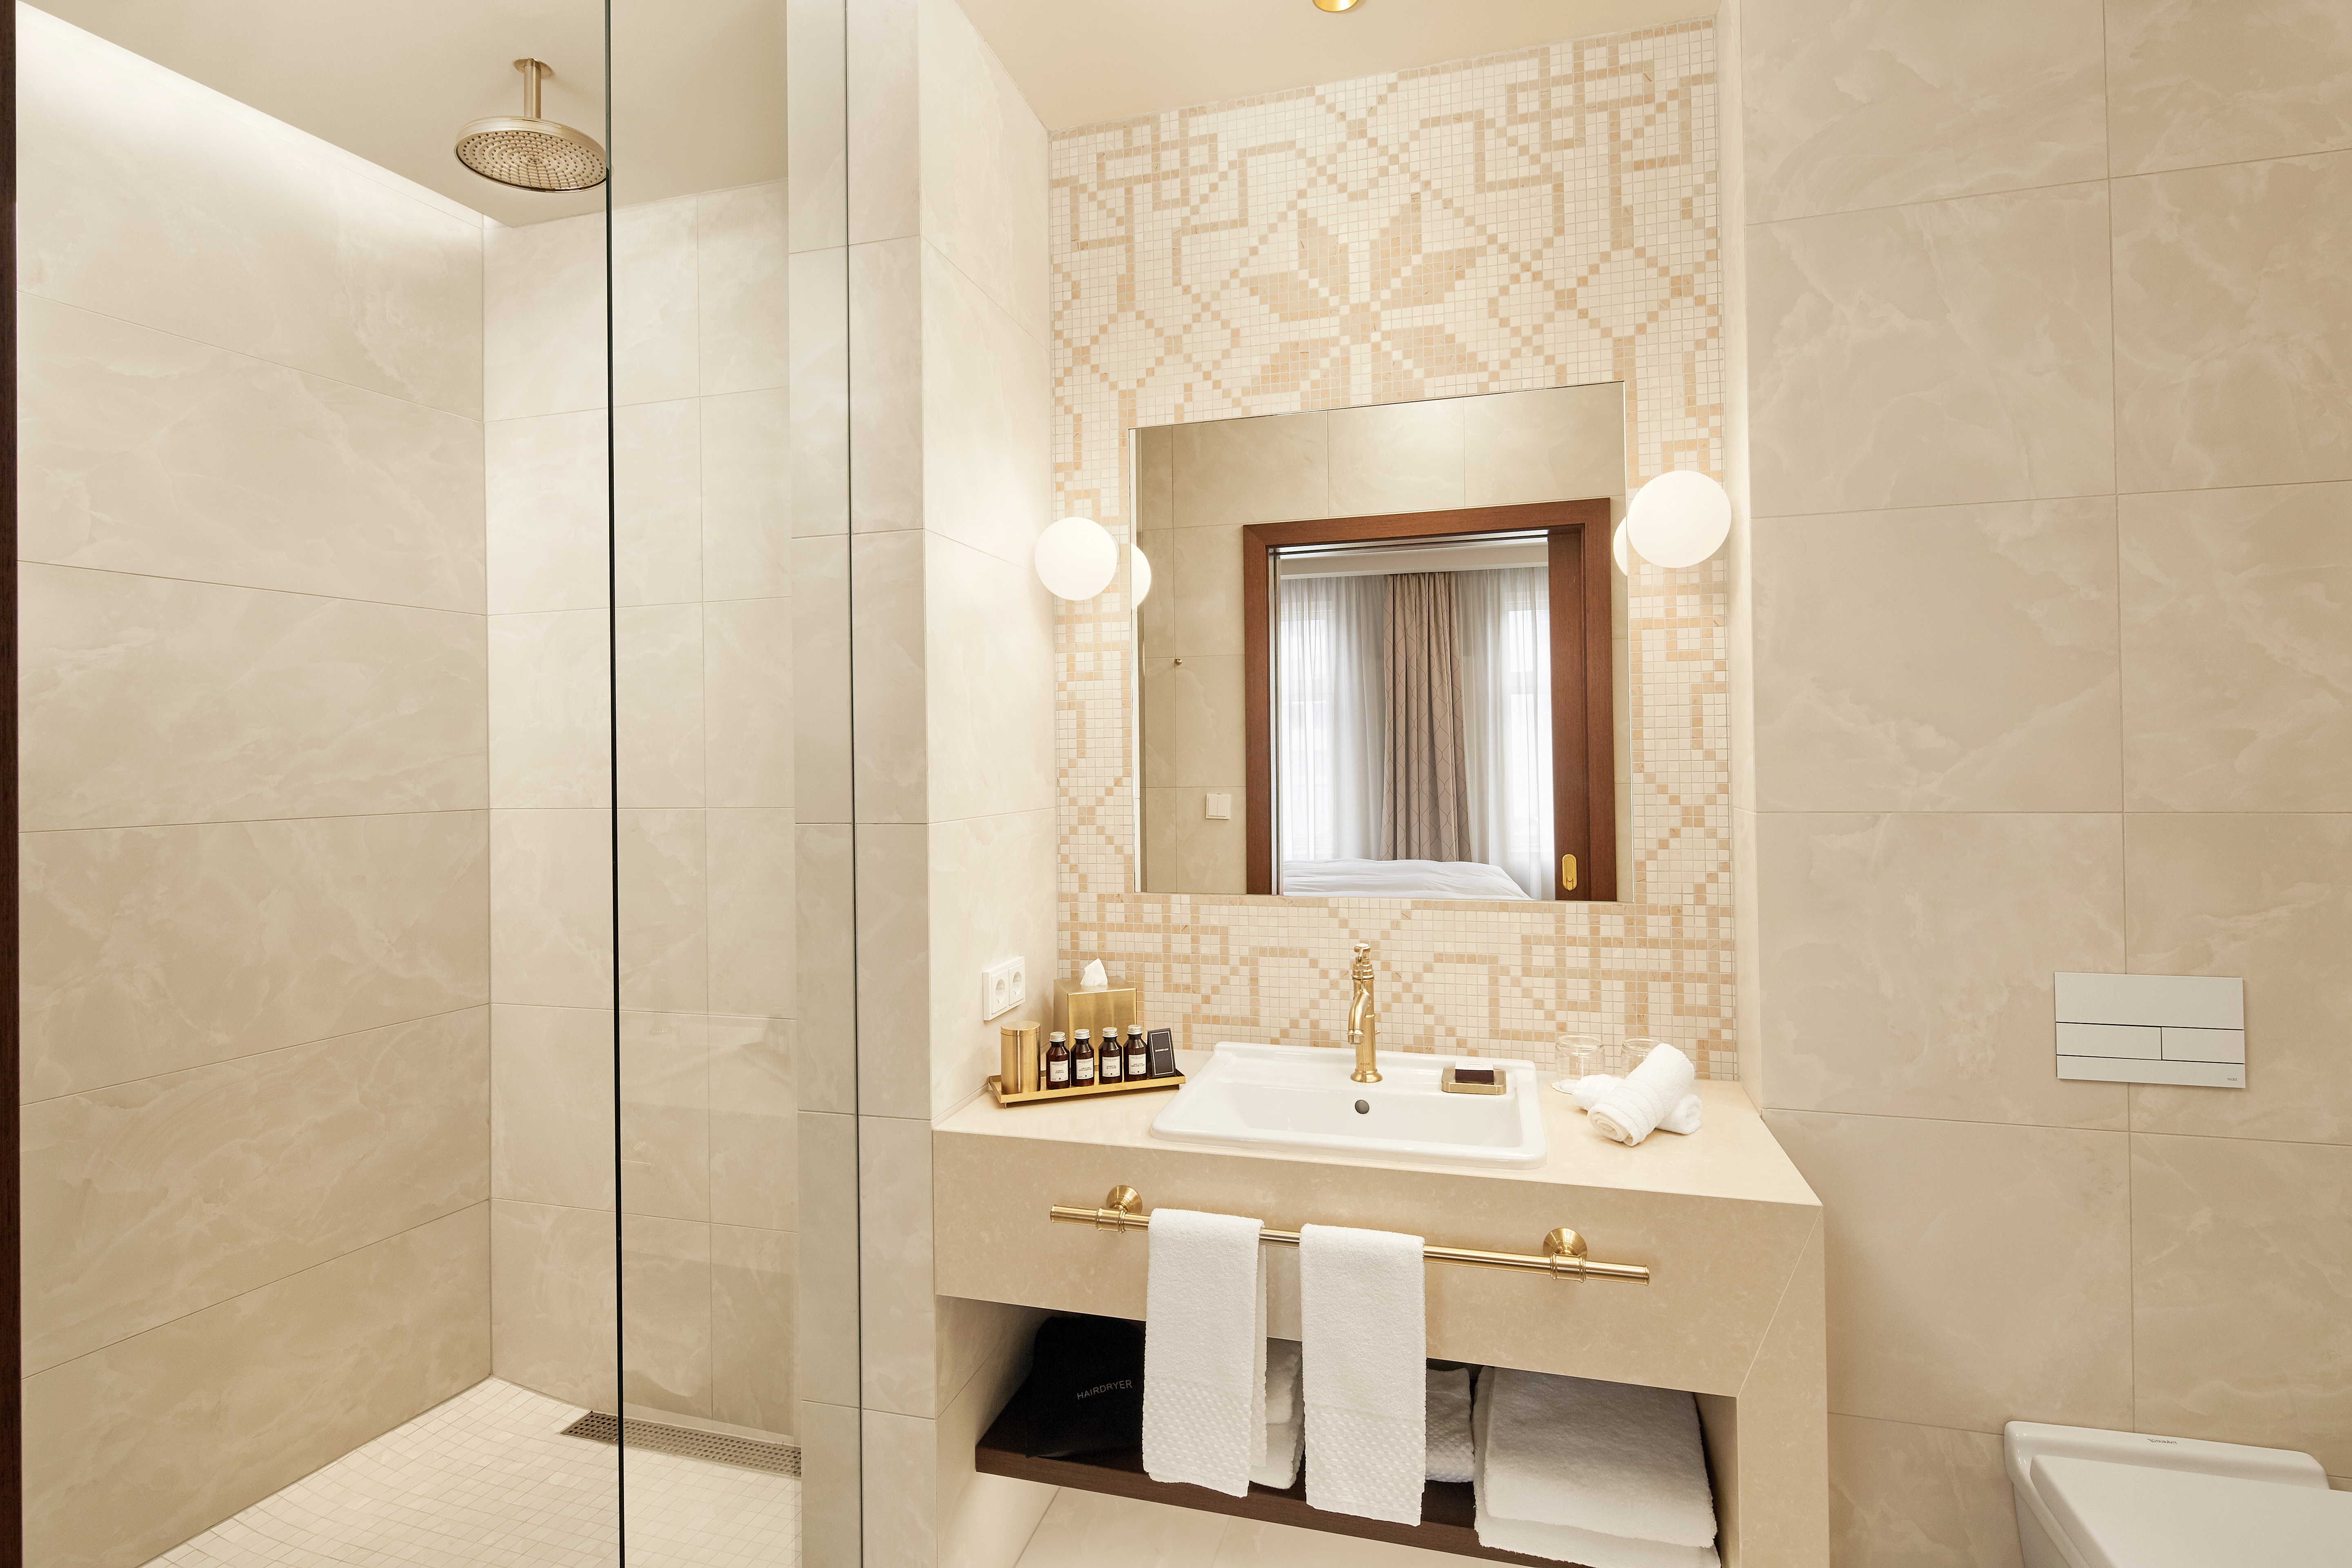 Premier Suite Bathroom with Vanity, Mirror and Shower with Glass Door